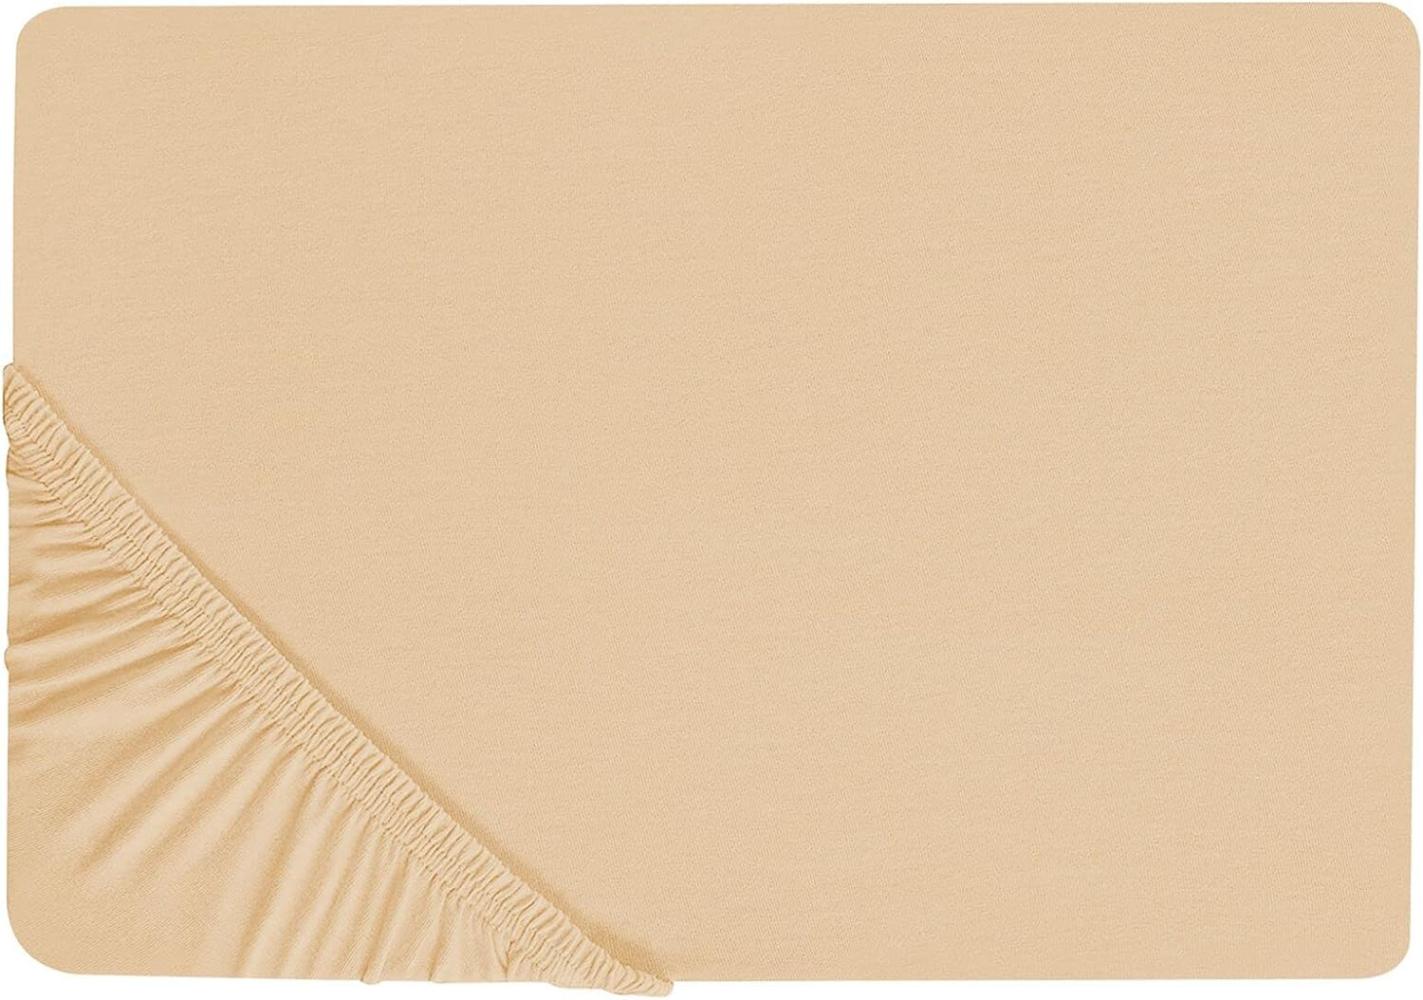 Spannbettlaken Baumwolle sandbeige 200 x 200 cm JANBU Bild 1